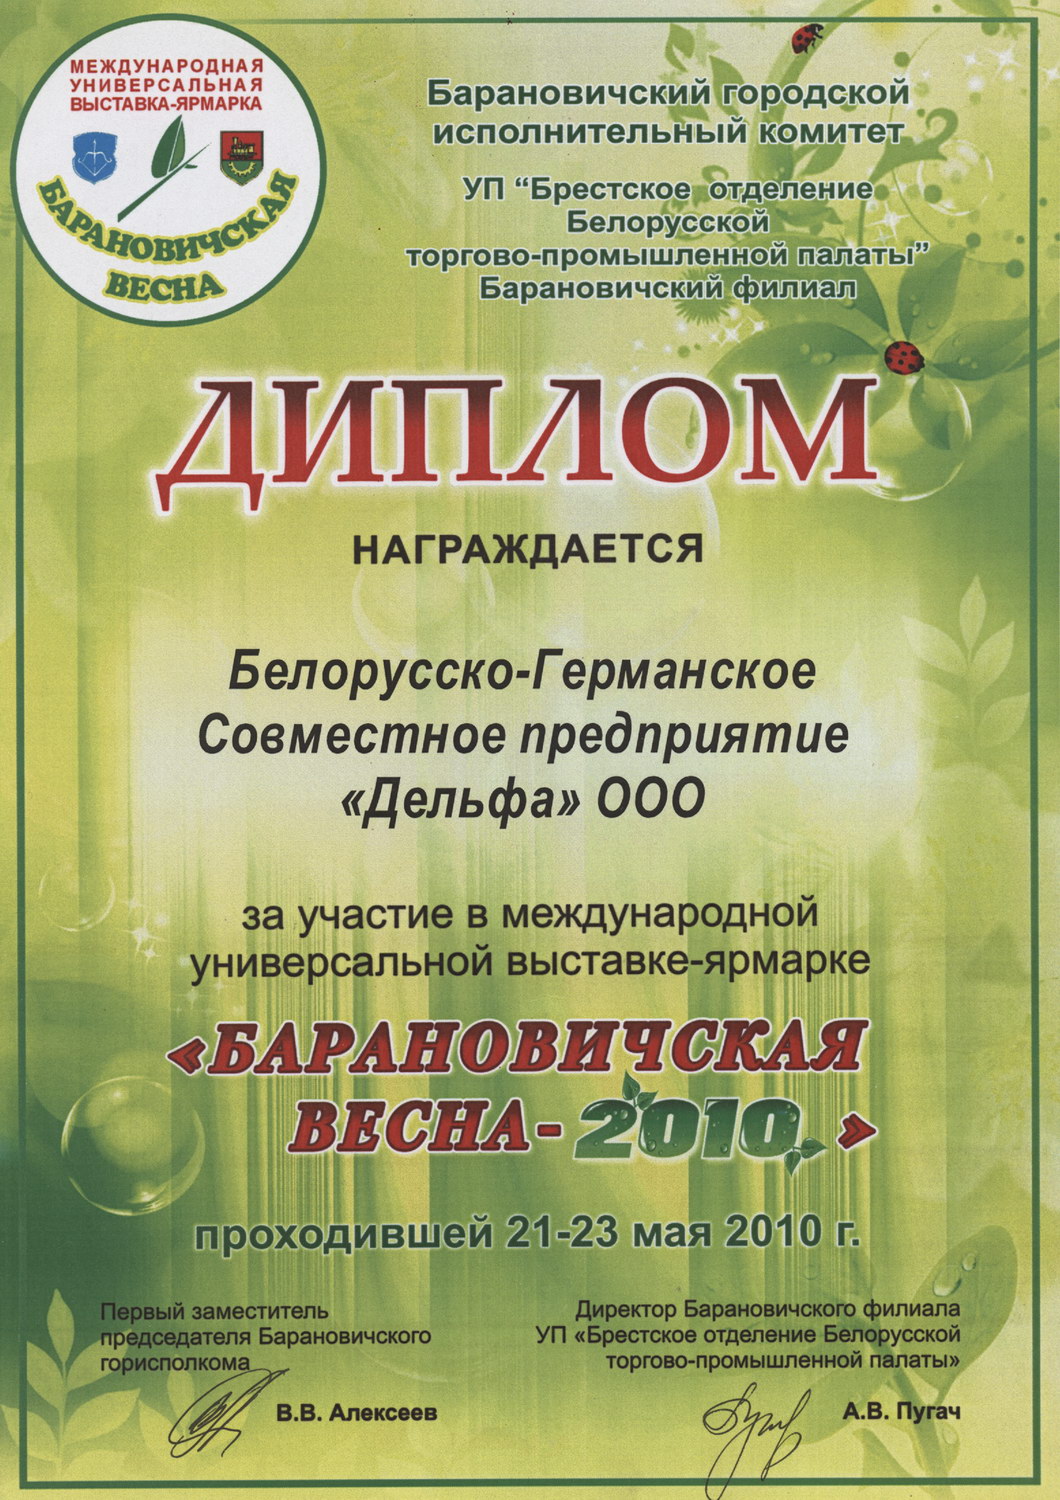 Диплом с выставки Барановичская весна 2010